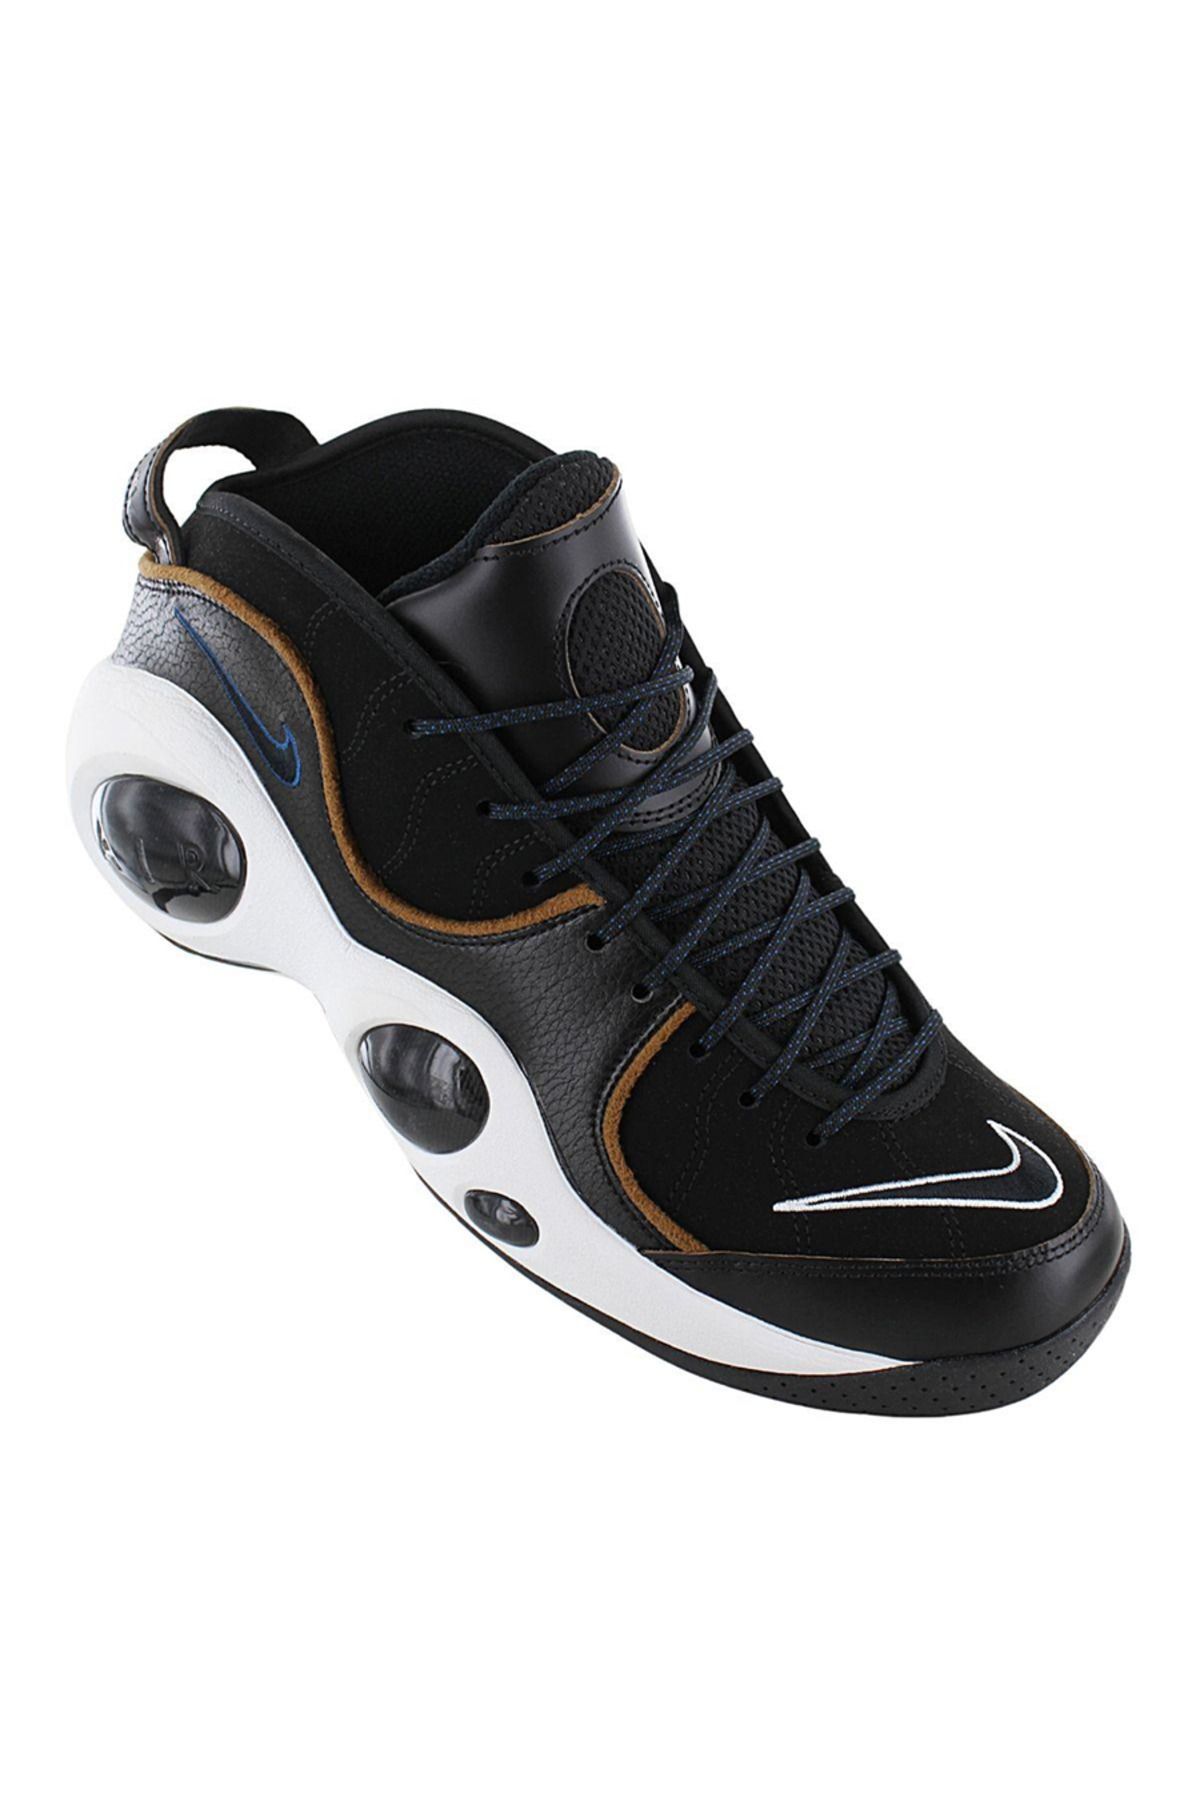 Nike Air Zoom Flight 95 - Erkek Spor Ayakkabı Basketbol Ayakkabısı Siyah DV6994-001